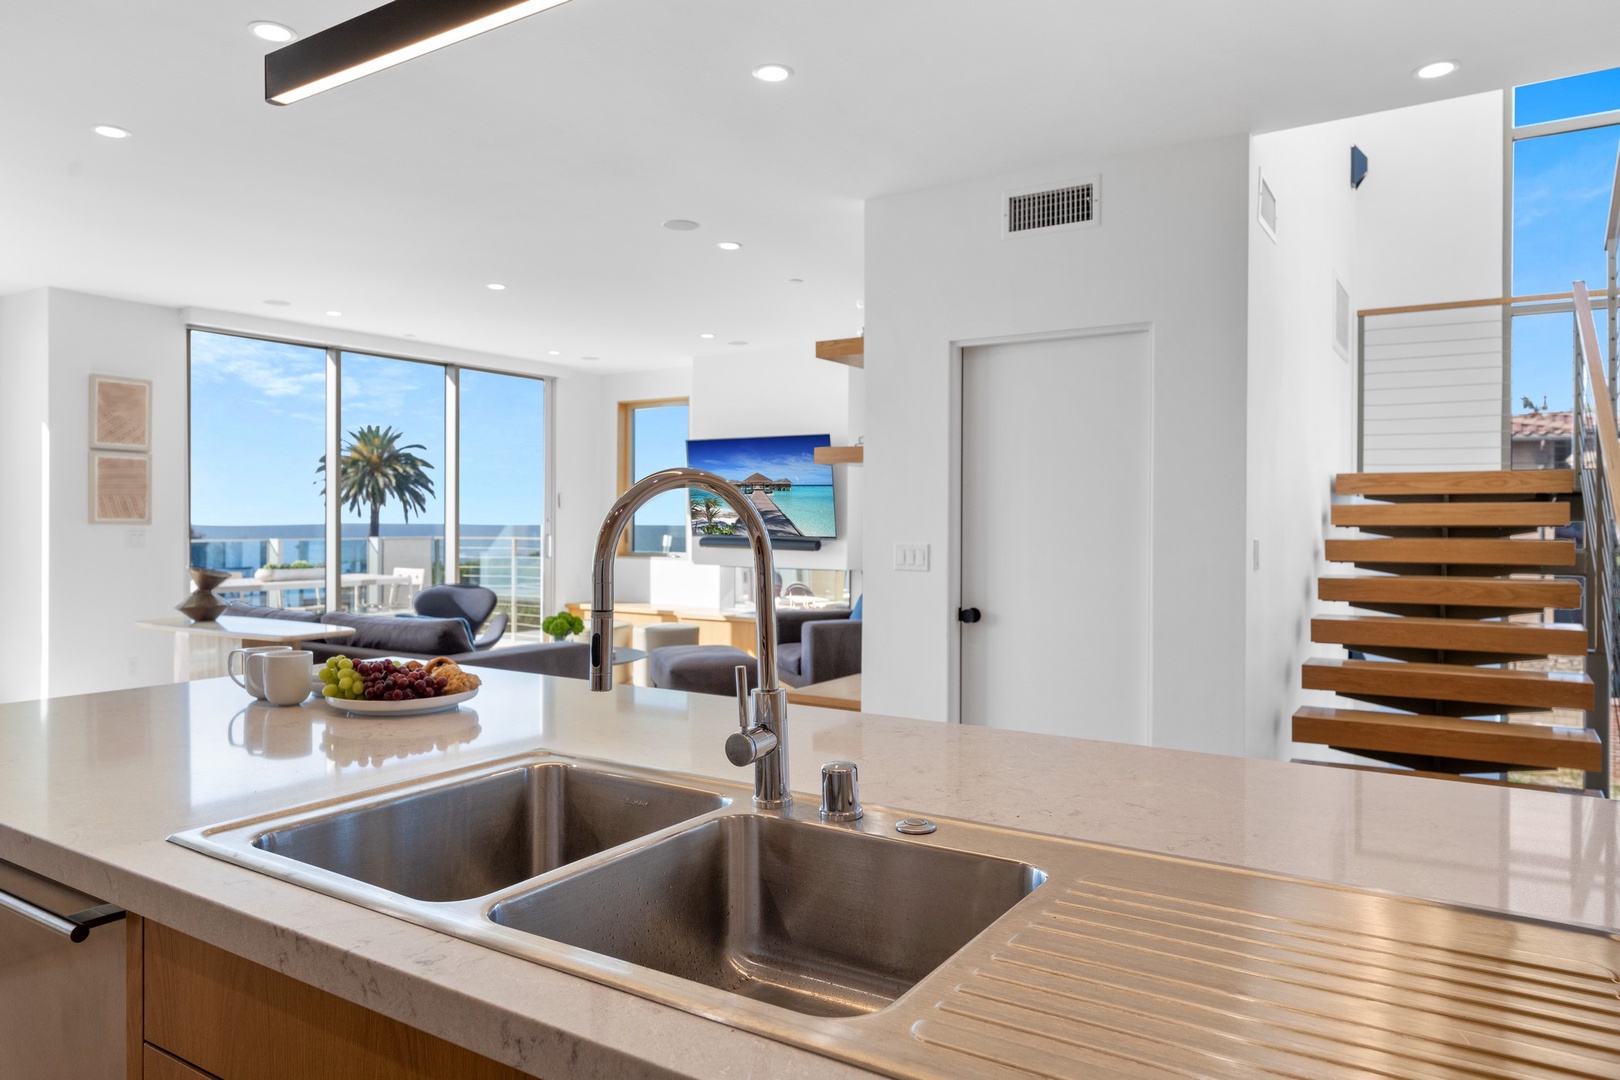 Ocean view kitchen